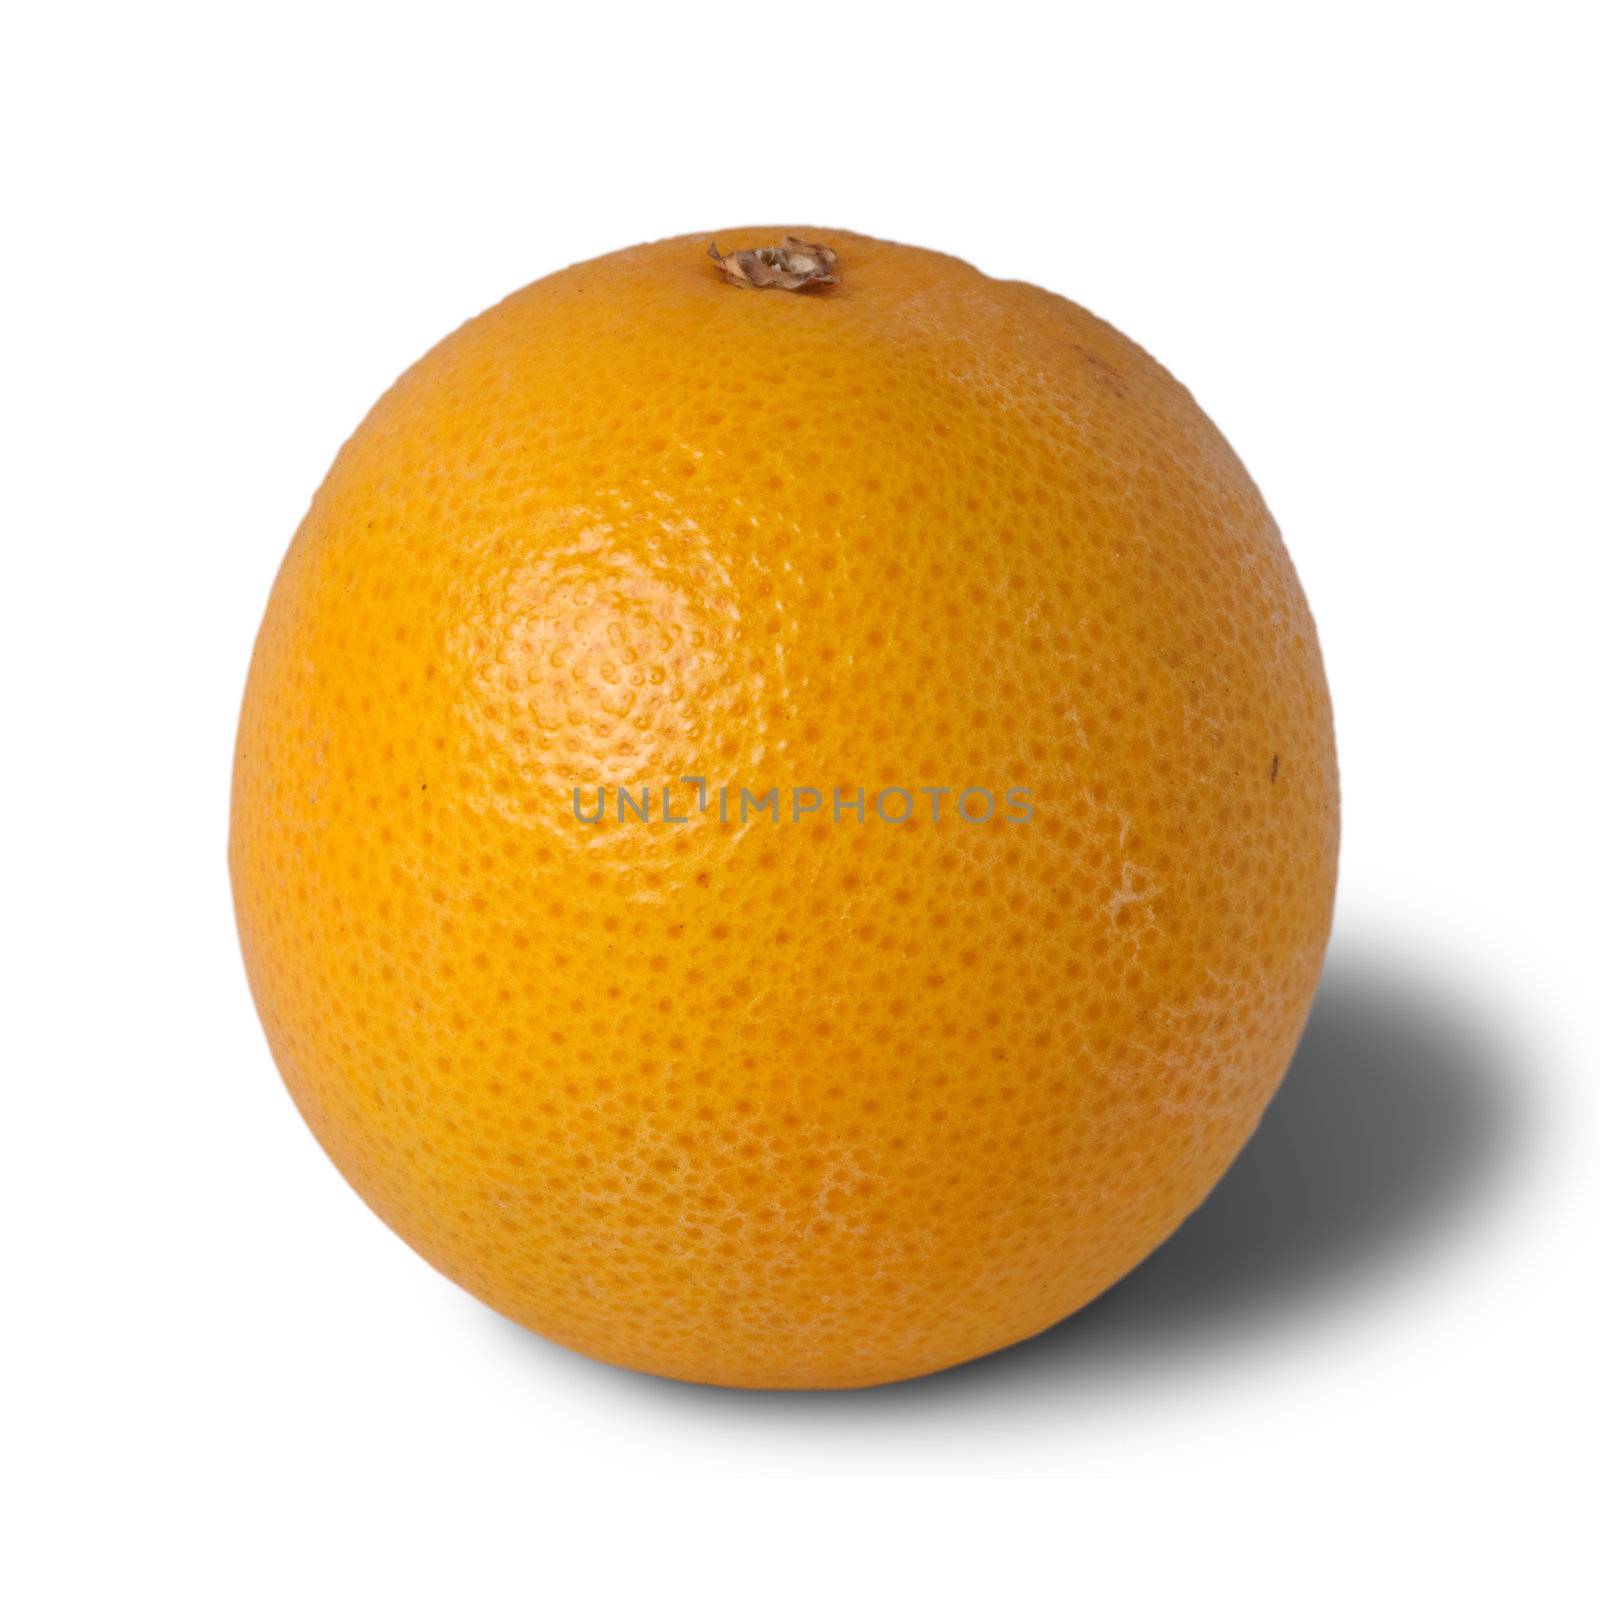 Isolated fruit of orange against white background.